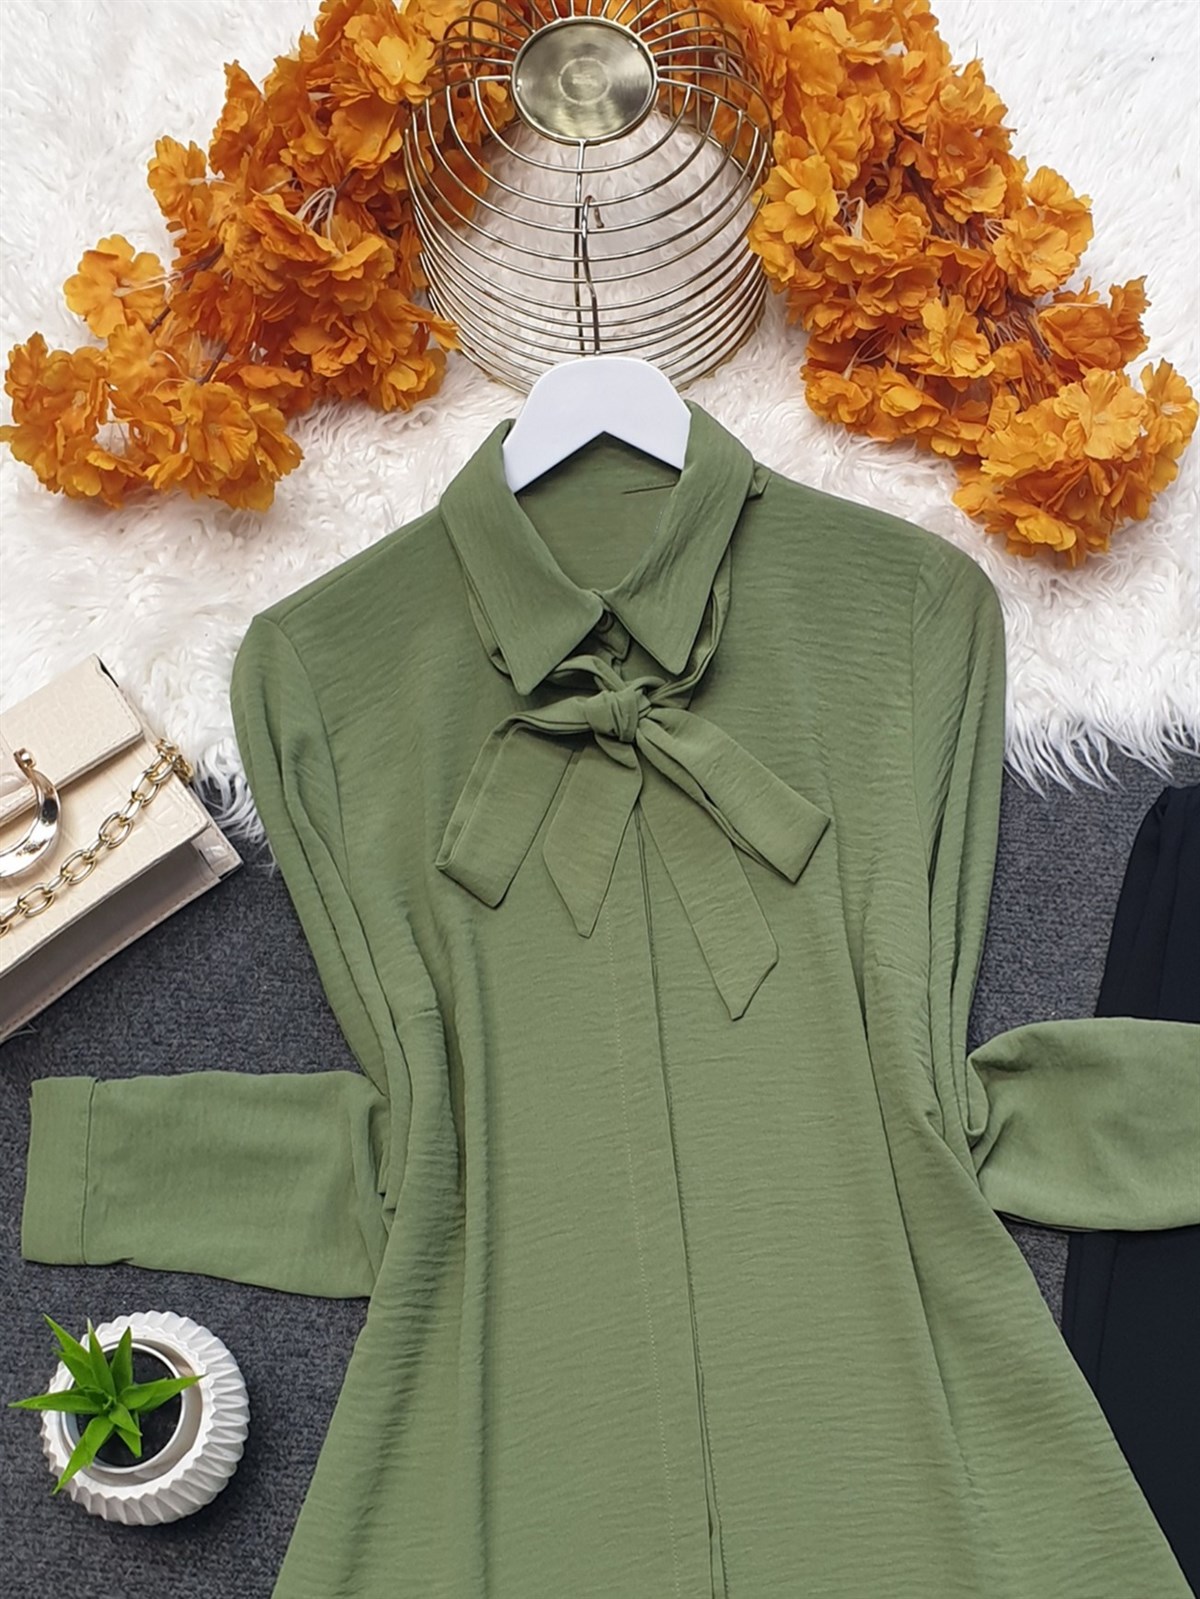 Yakası Bağcıklı Eteği Fırfırlı Ayrobin Gömlek Tunik -Yeşil | Fixay Markalı  - Kadın Tesettür Giyim - Ayrobin Tunik Modelleri | KaliteMall.com